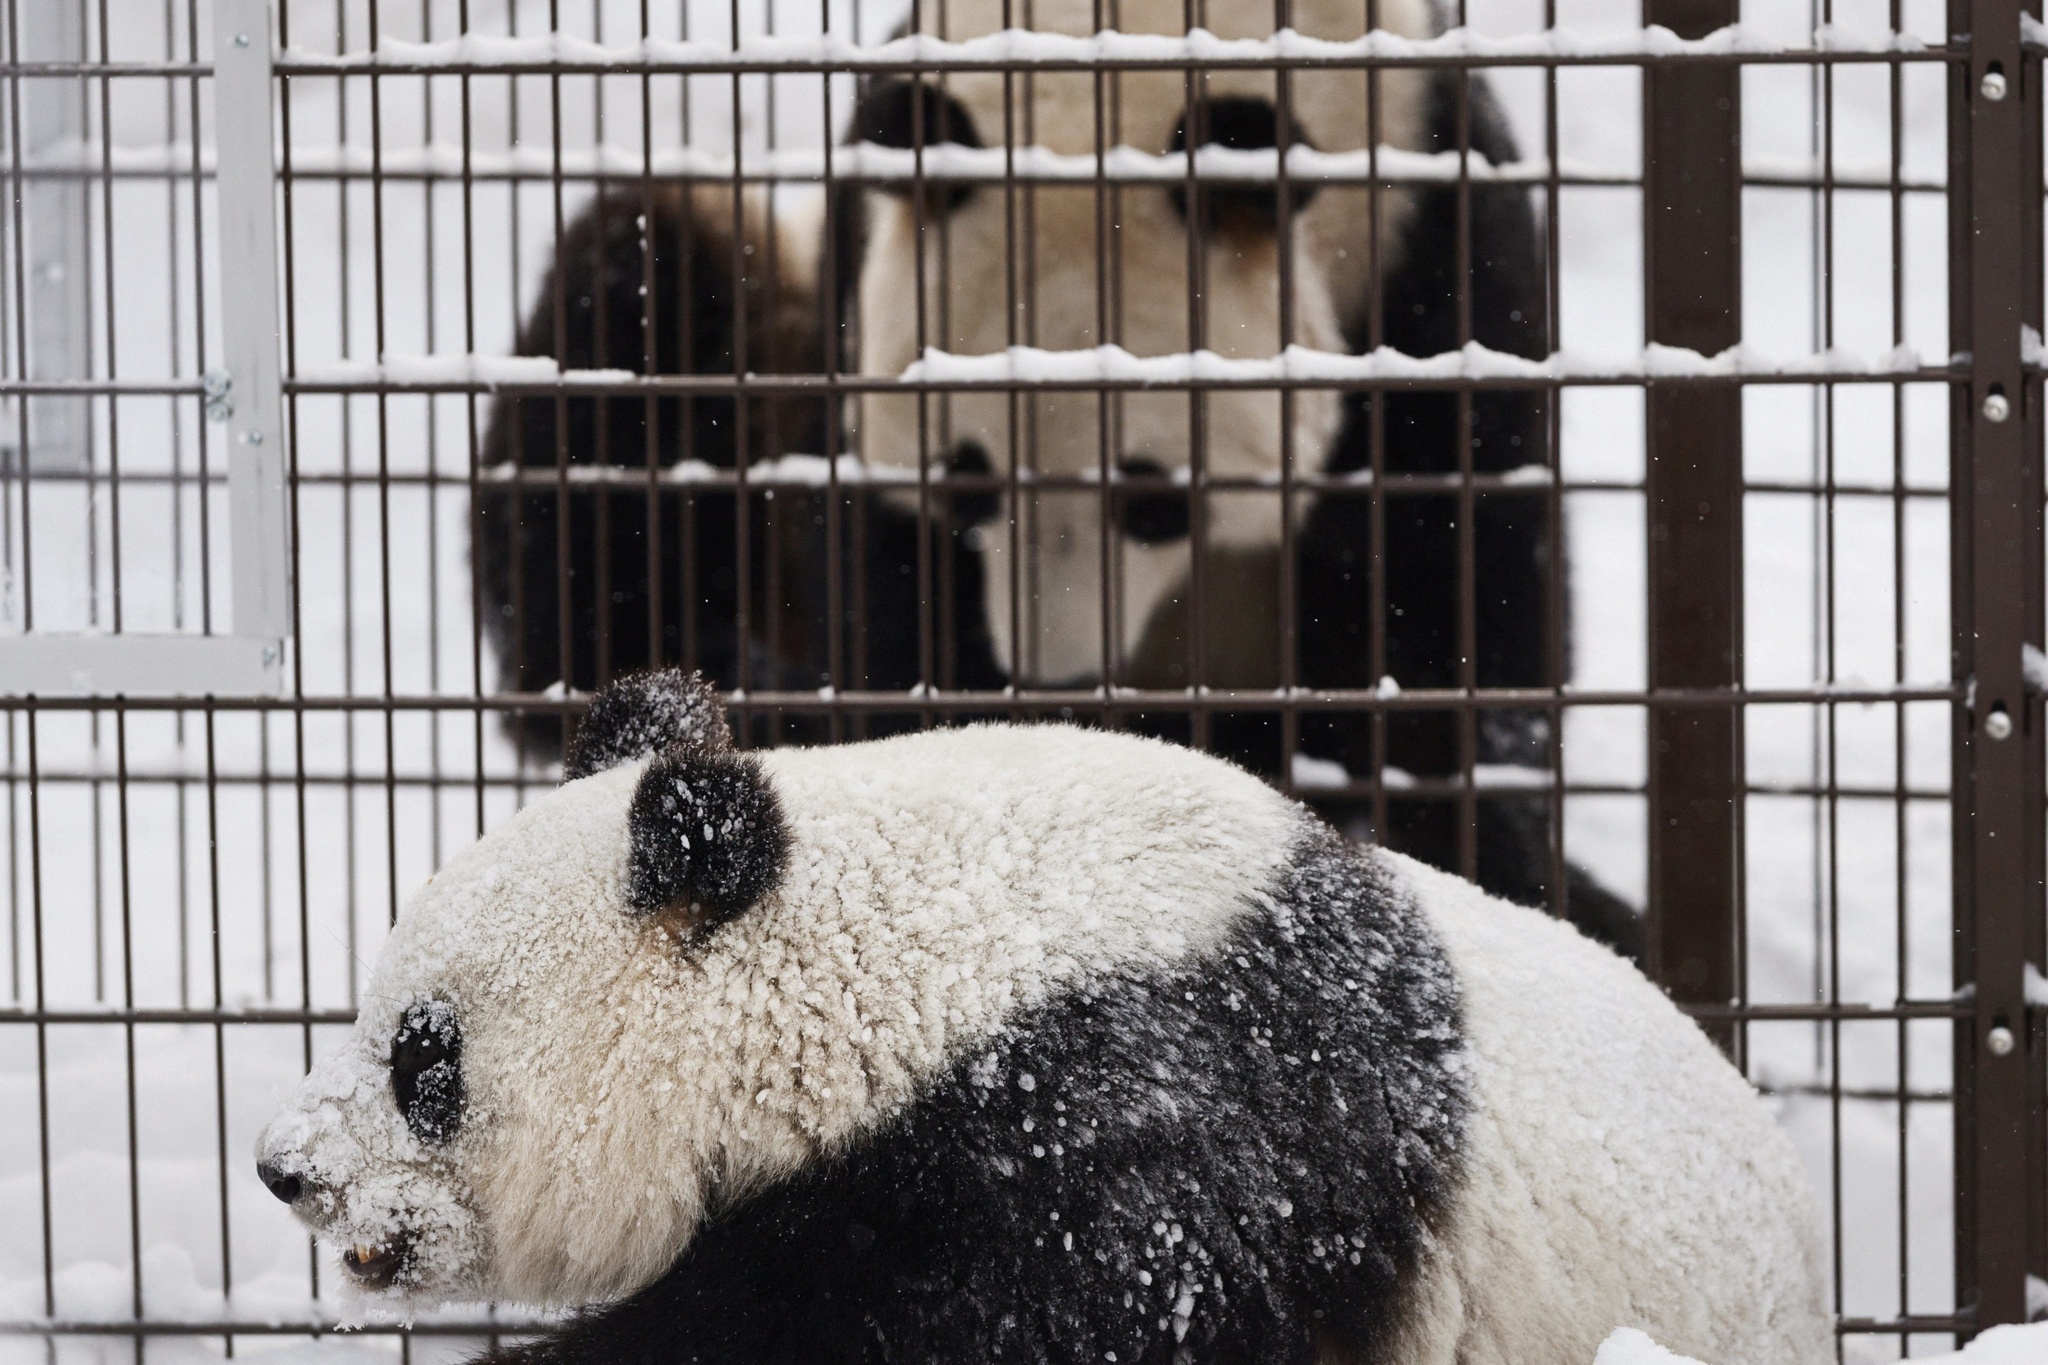 Không đủ tiền nuôi, vườn thú Phần Lan định trả Trung Quốc 2 con gấu trúc - ảnh 1